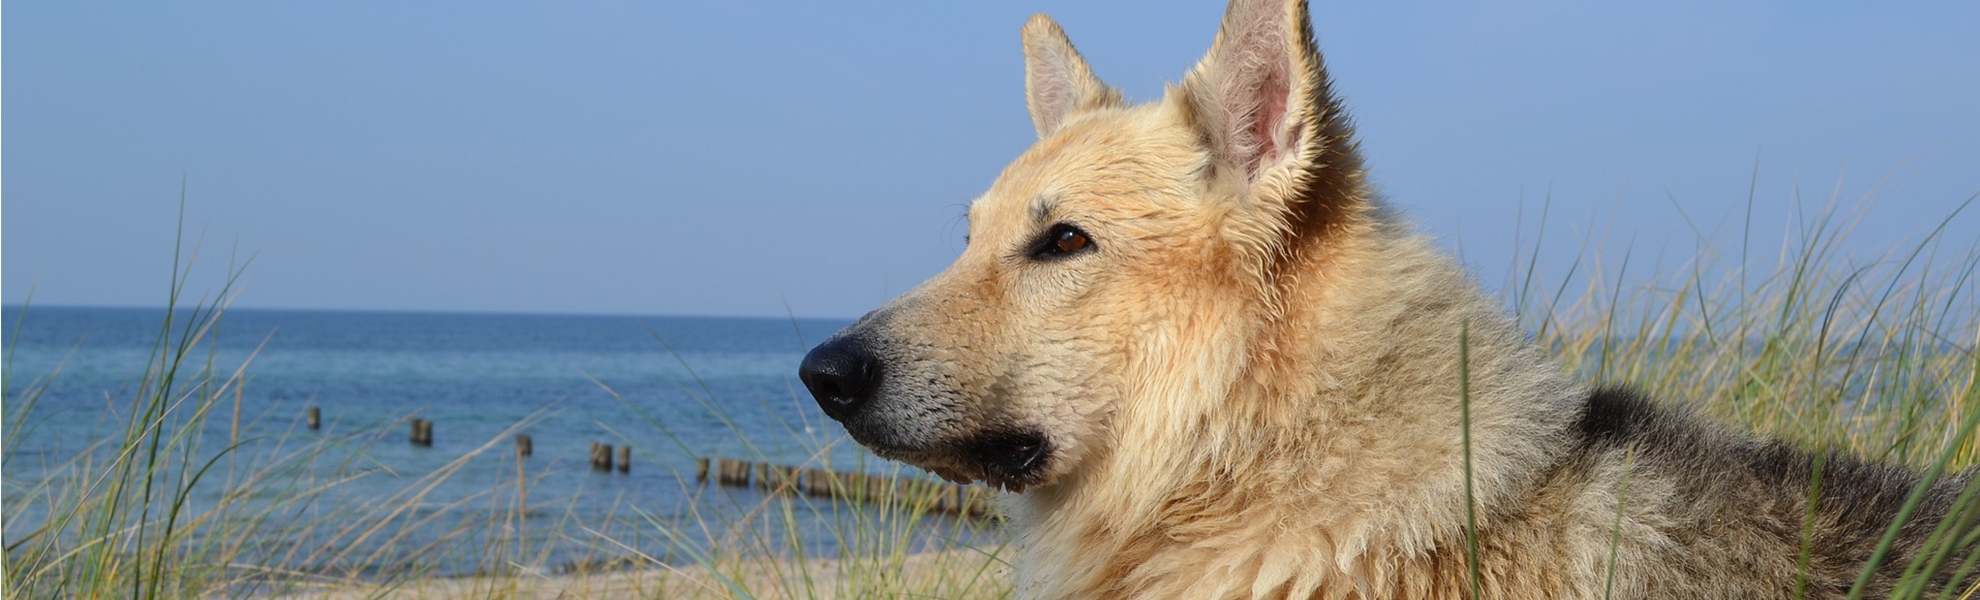 Ferienhaus Holiday Dogs - Urlaub mit Hund an der Ostsee